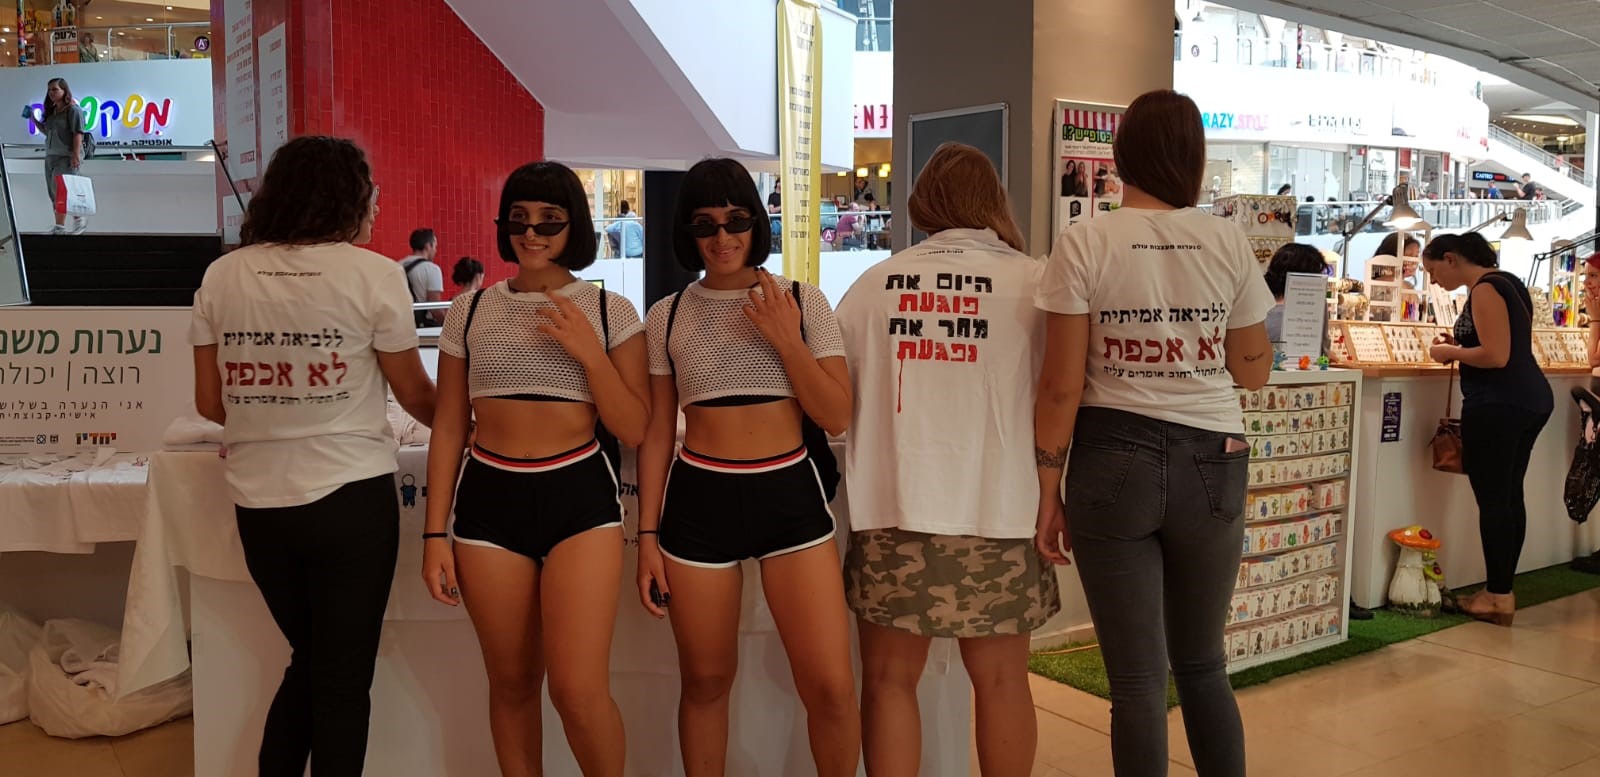 "נערות מעצבות עולם" עושות חיל בתל אביב ומושכות גם את הסלב: